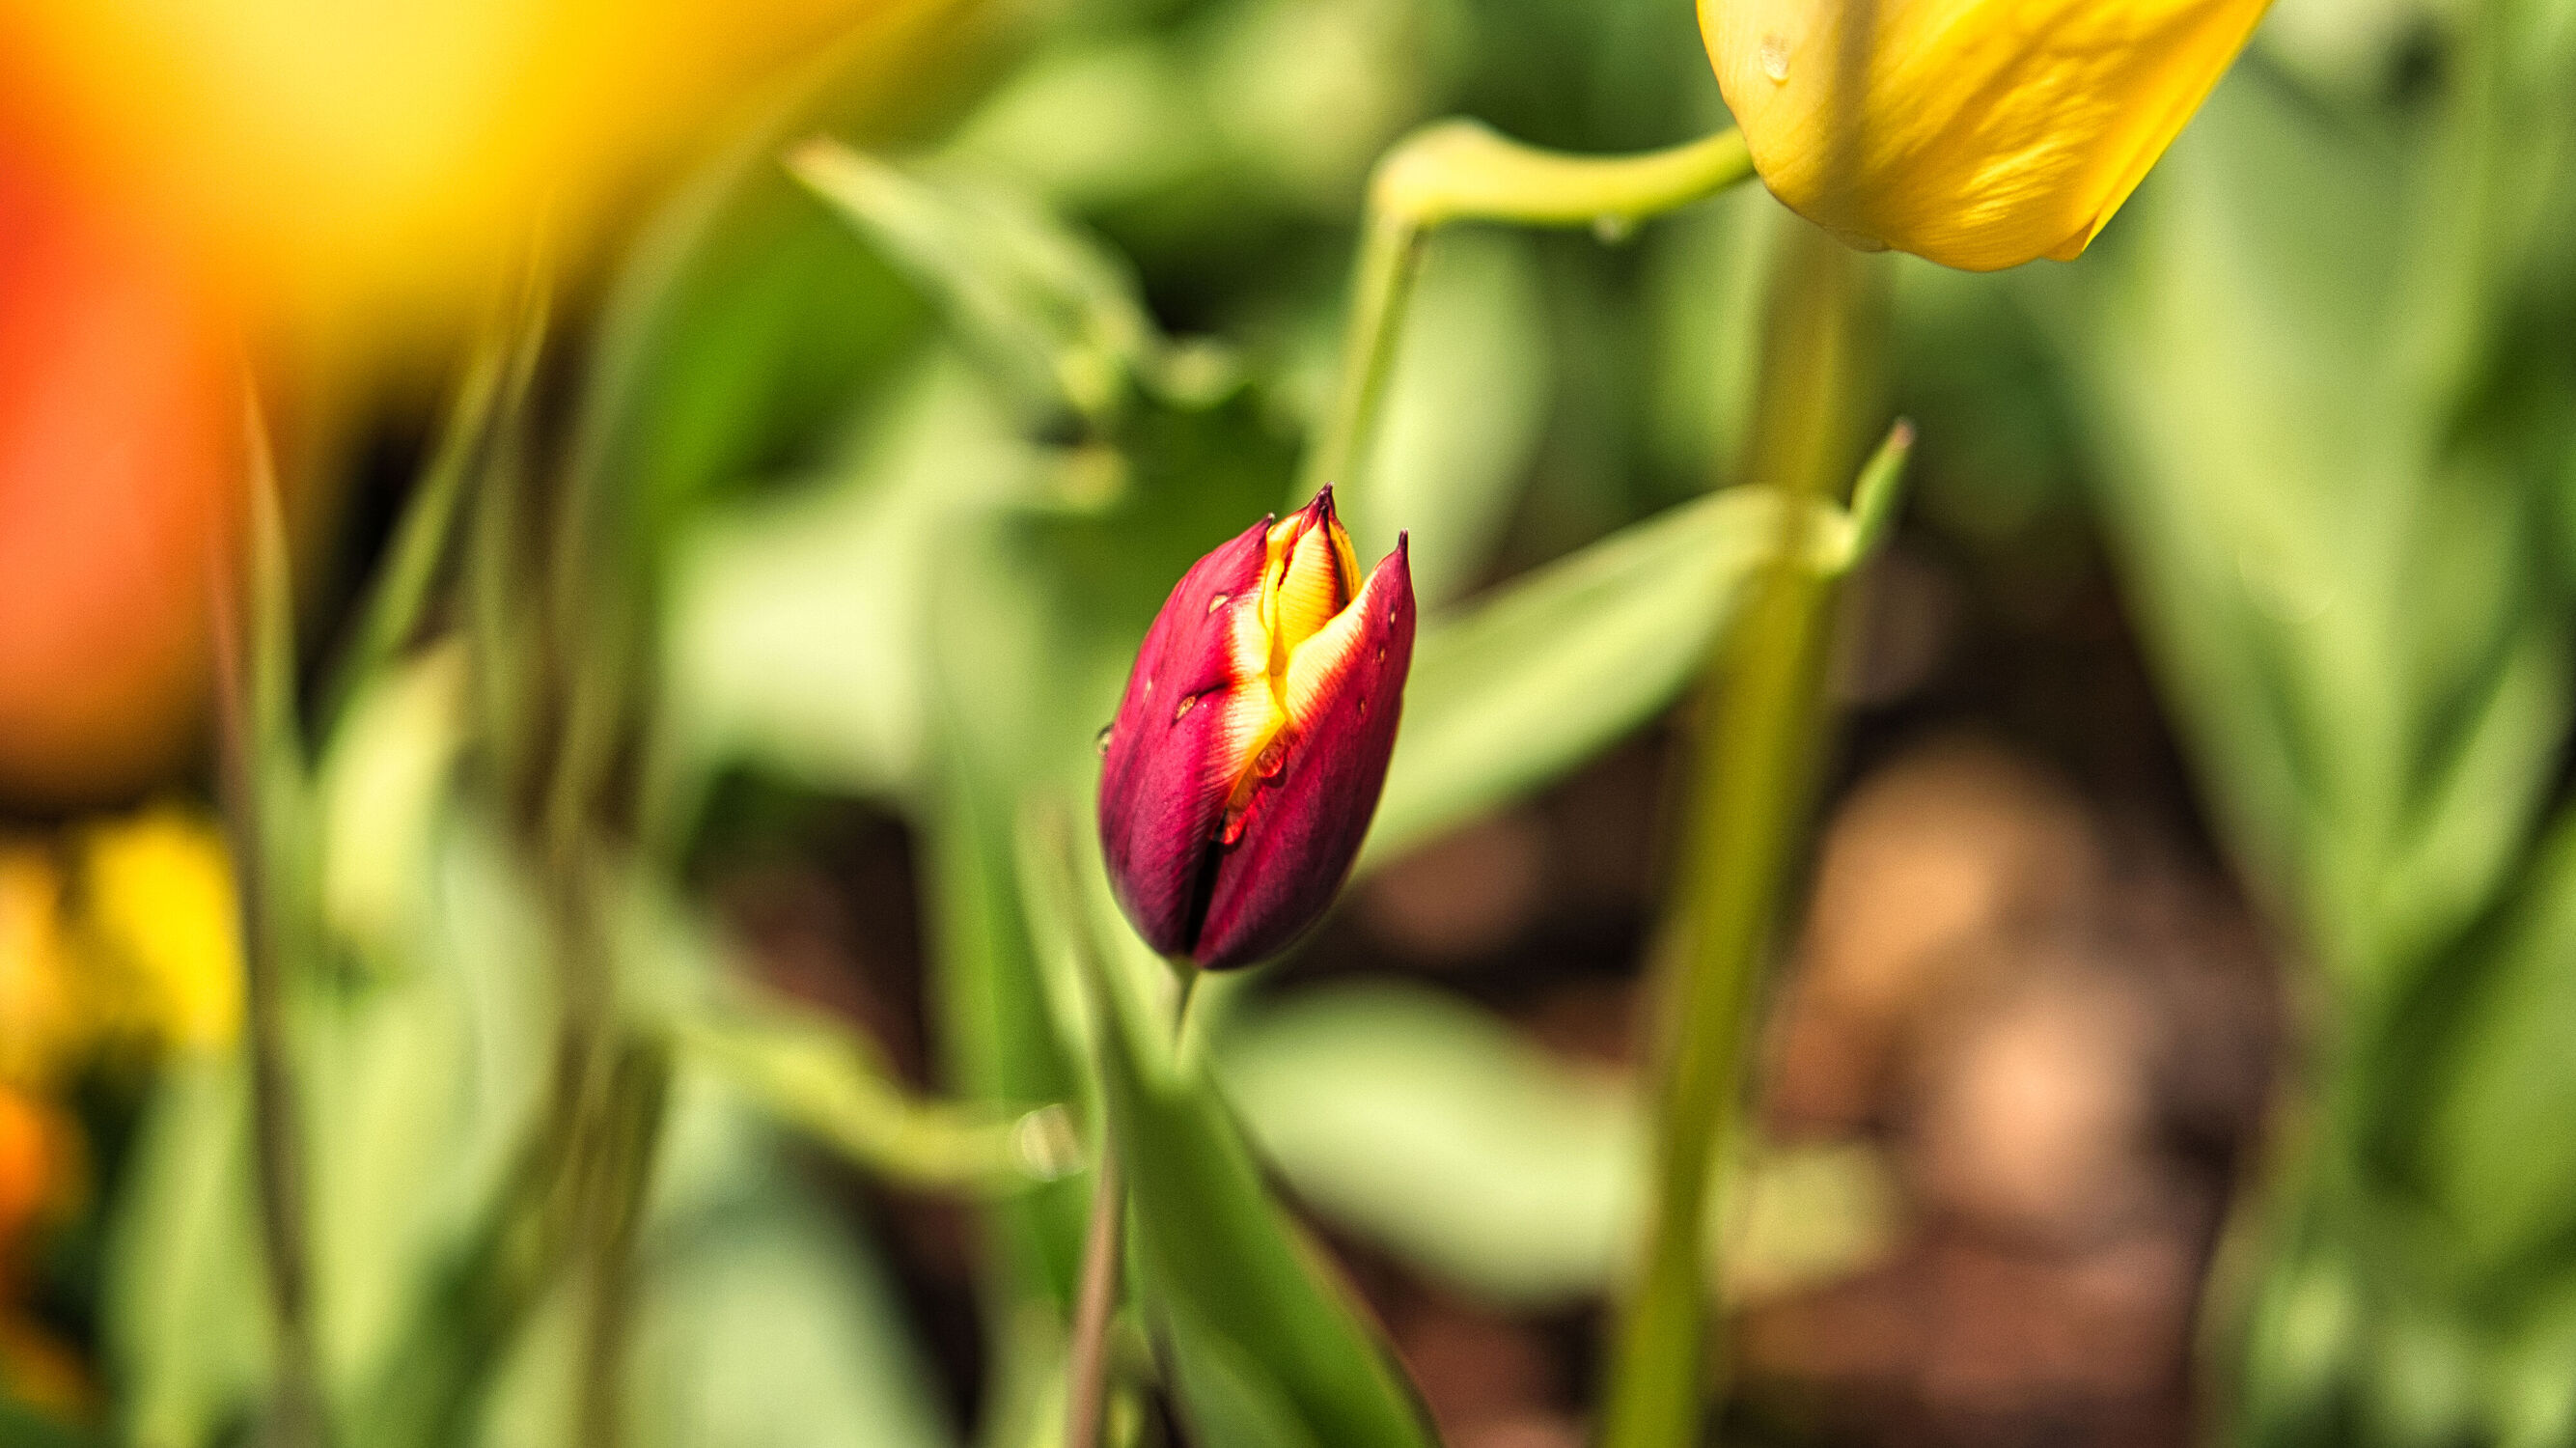 Bild mit Natur, Blume, Tulpe, Tulipa, Wiese, Flora, frühblüher, schön, bokeh, romantische